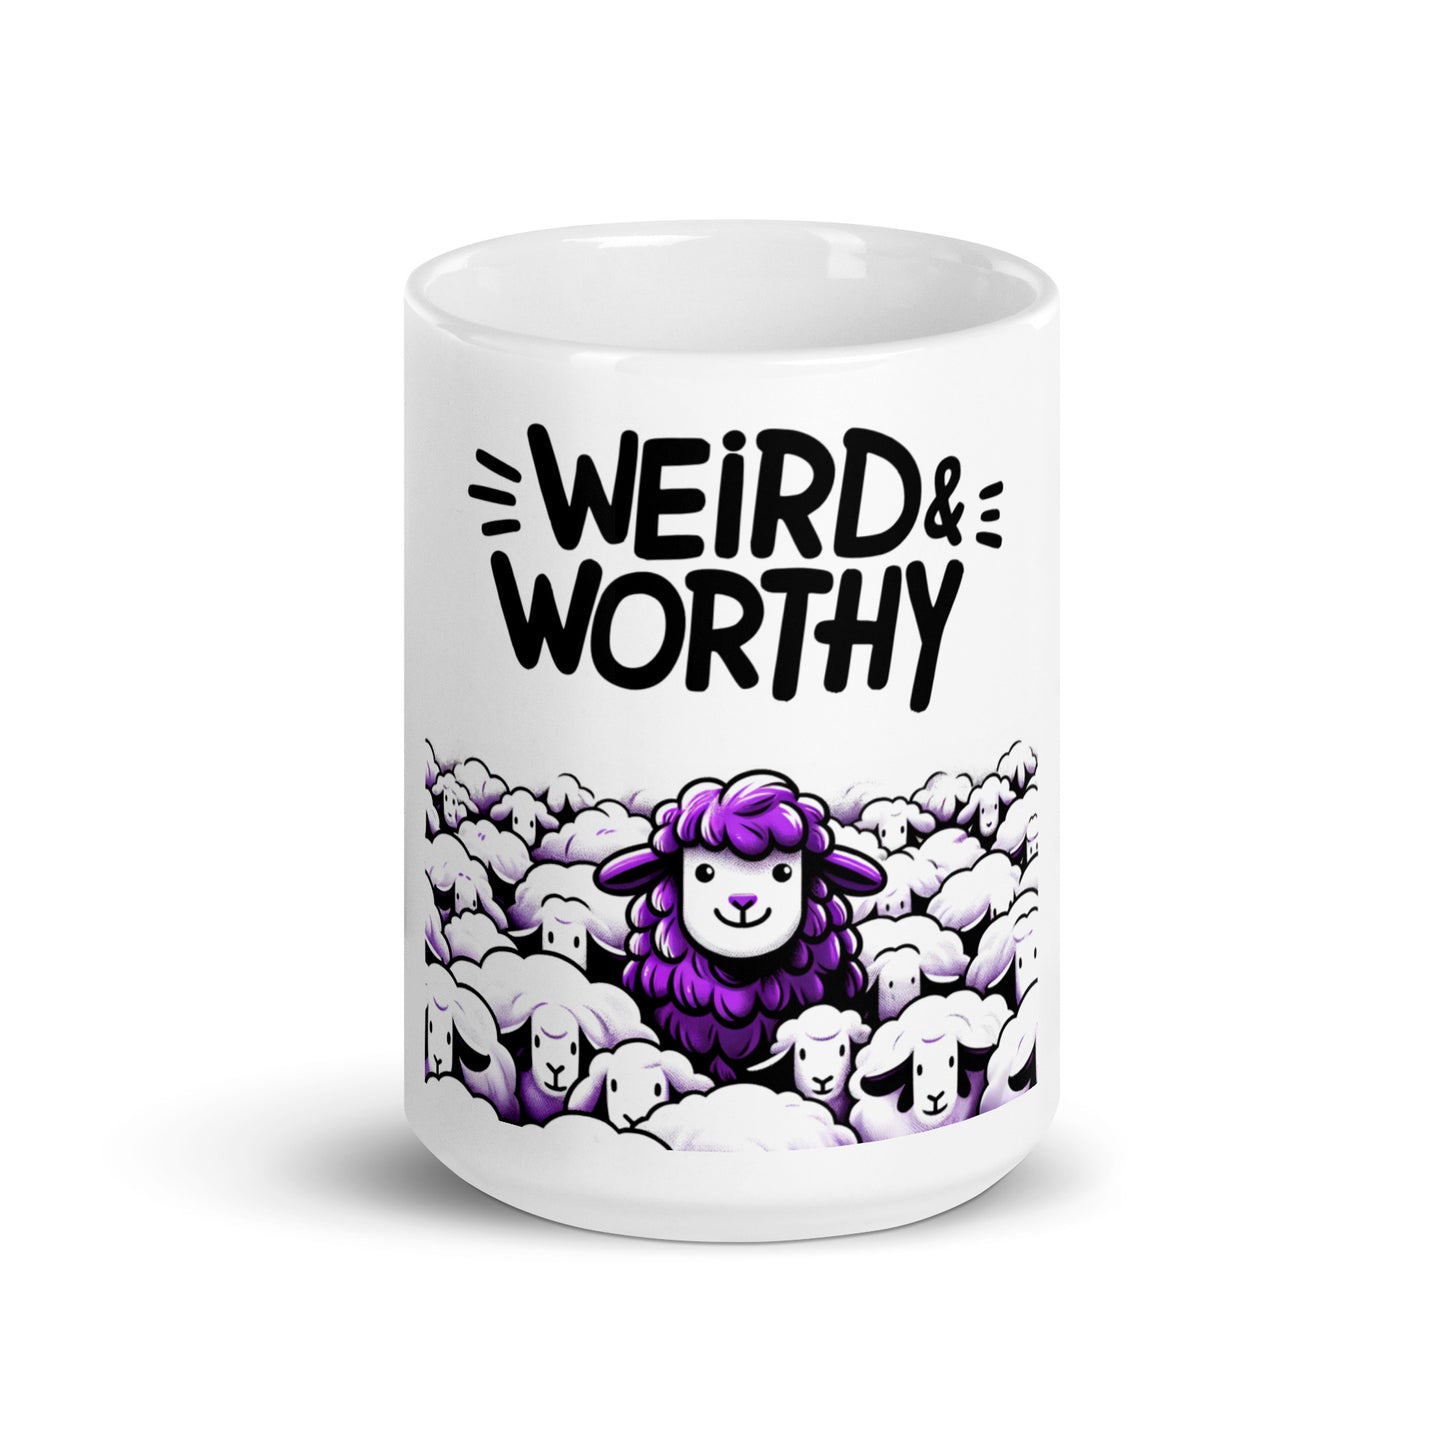 GWMS "Weird & Worthy" White Glossy Mug